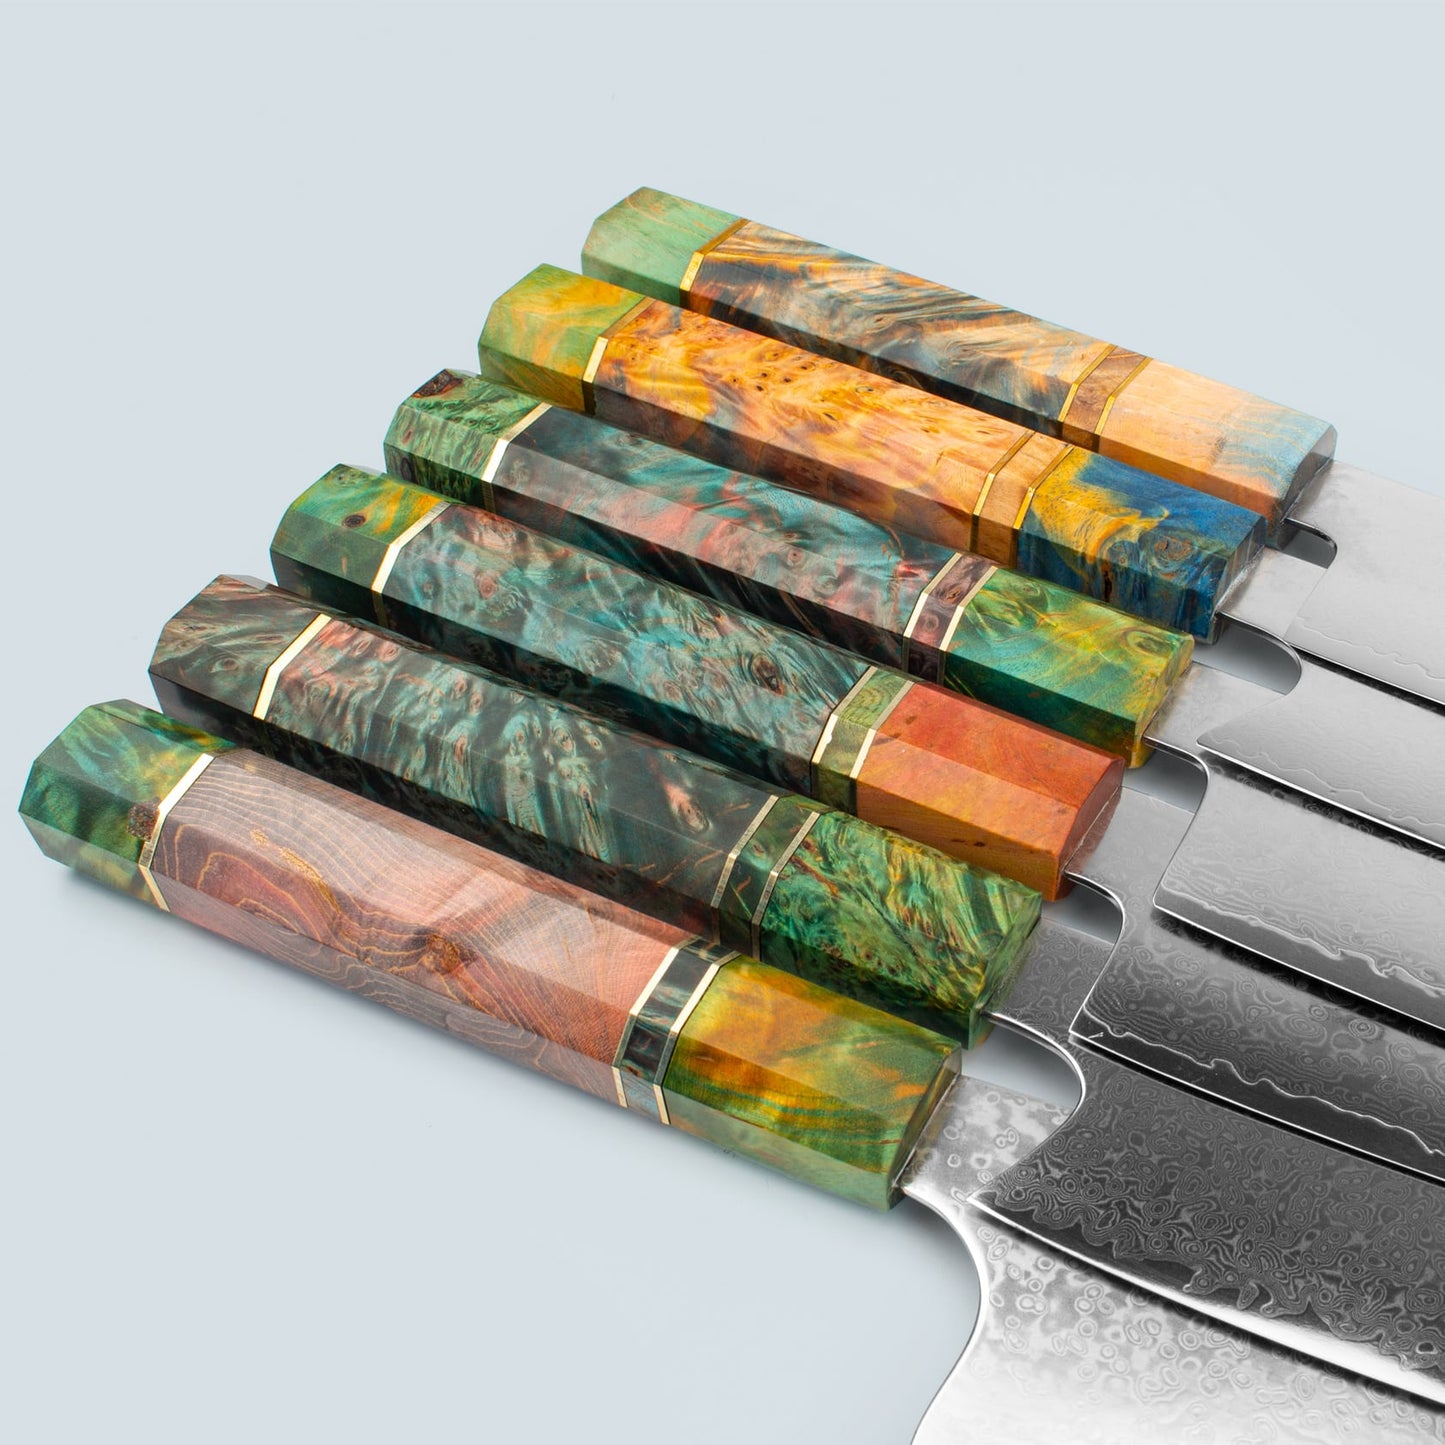 Ichika (いち か) Coltello d'acciaio Damasco con manico ottagonale colorato